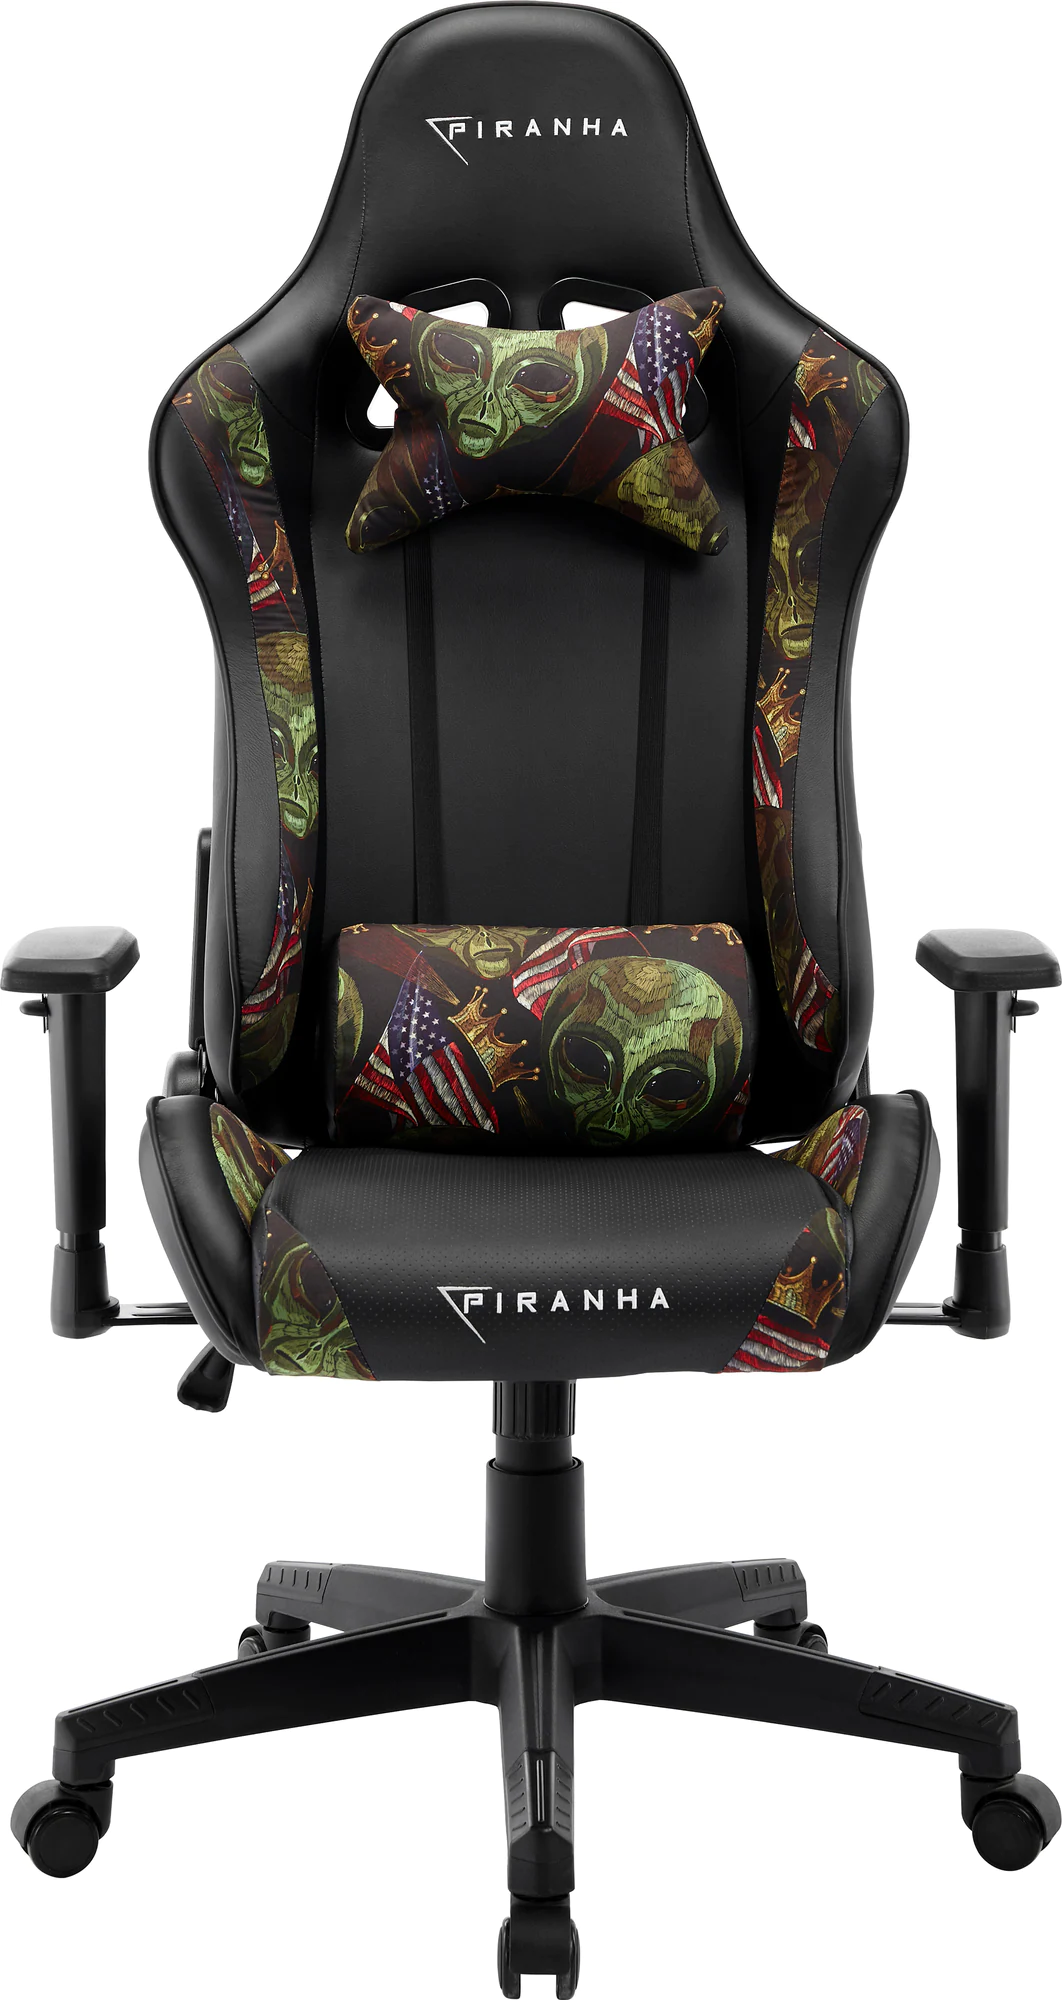  Bild på Piranha Bite Gaming Chair - Alien Invade Design gamingstol